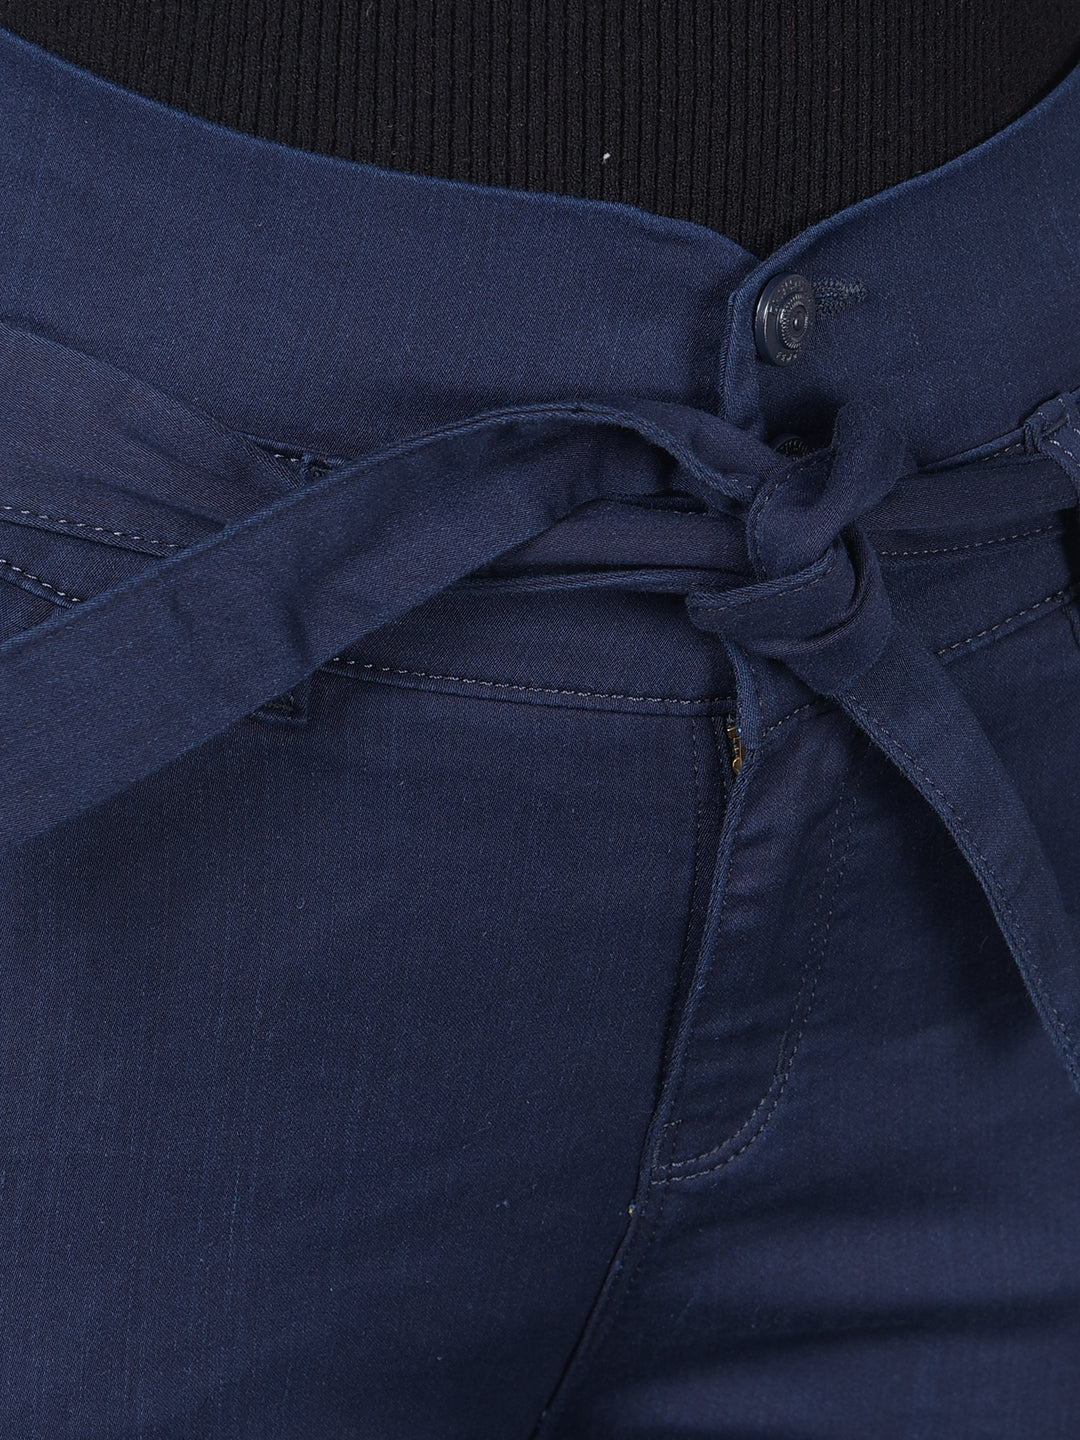 Navy Blue High Waist Jeans With Belt-Women Jeans-Crimsoune Club